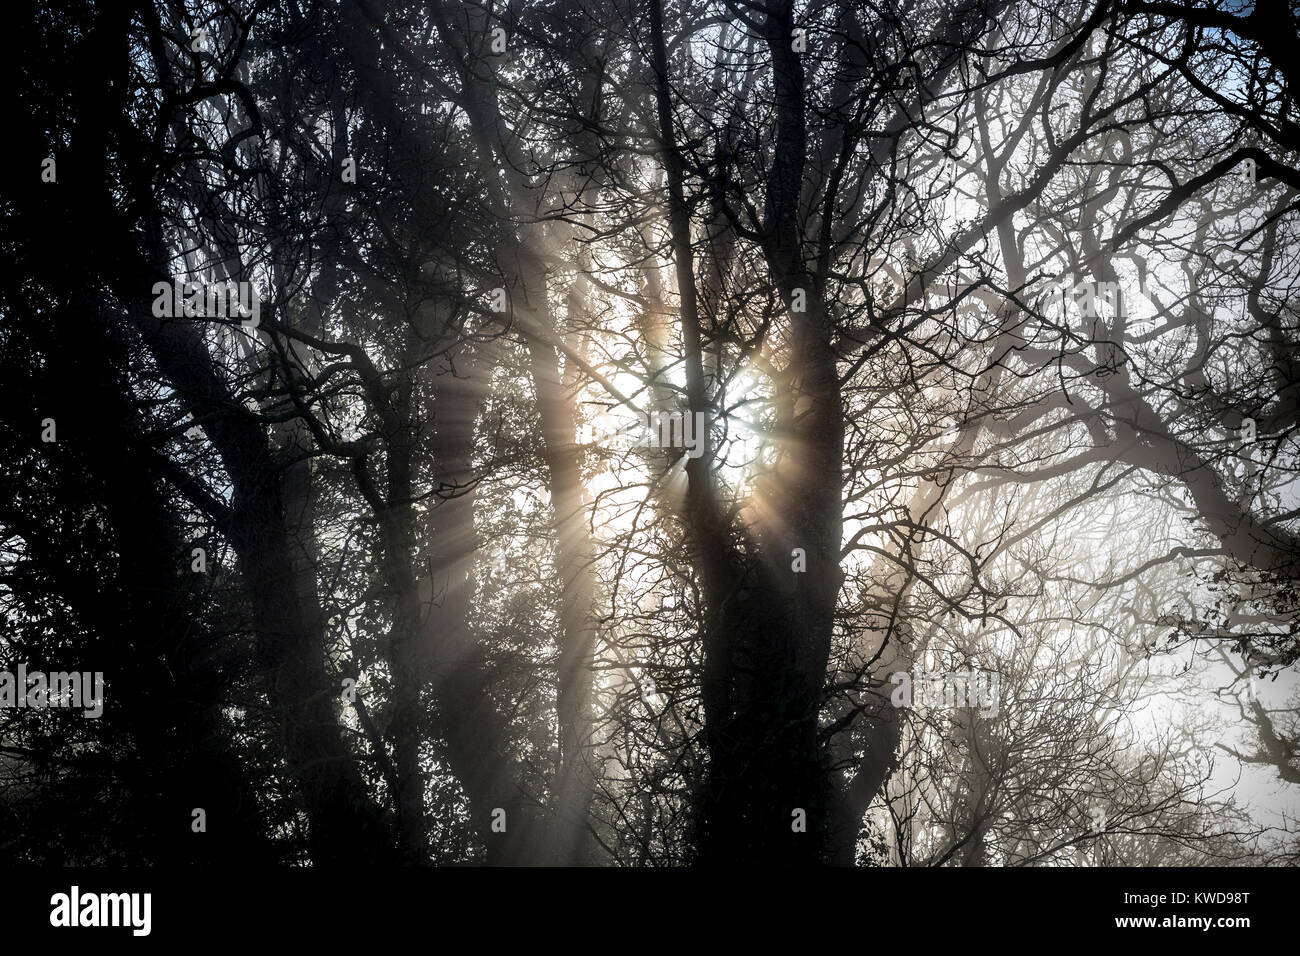 La luz del sol a través de la espesura, en Devon lane,neblina, niebla, niebla, oscuridad, cloud, nubosidad, brumoso, scotch mist, haar, vapores, regar, pulverizar Foto de stock